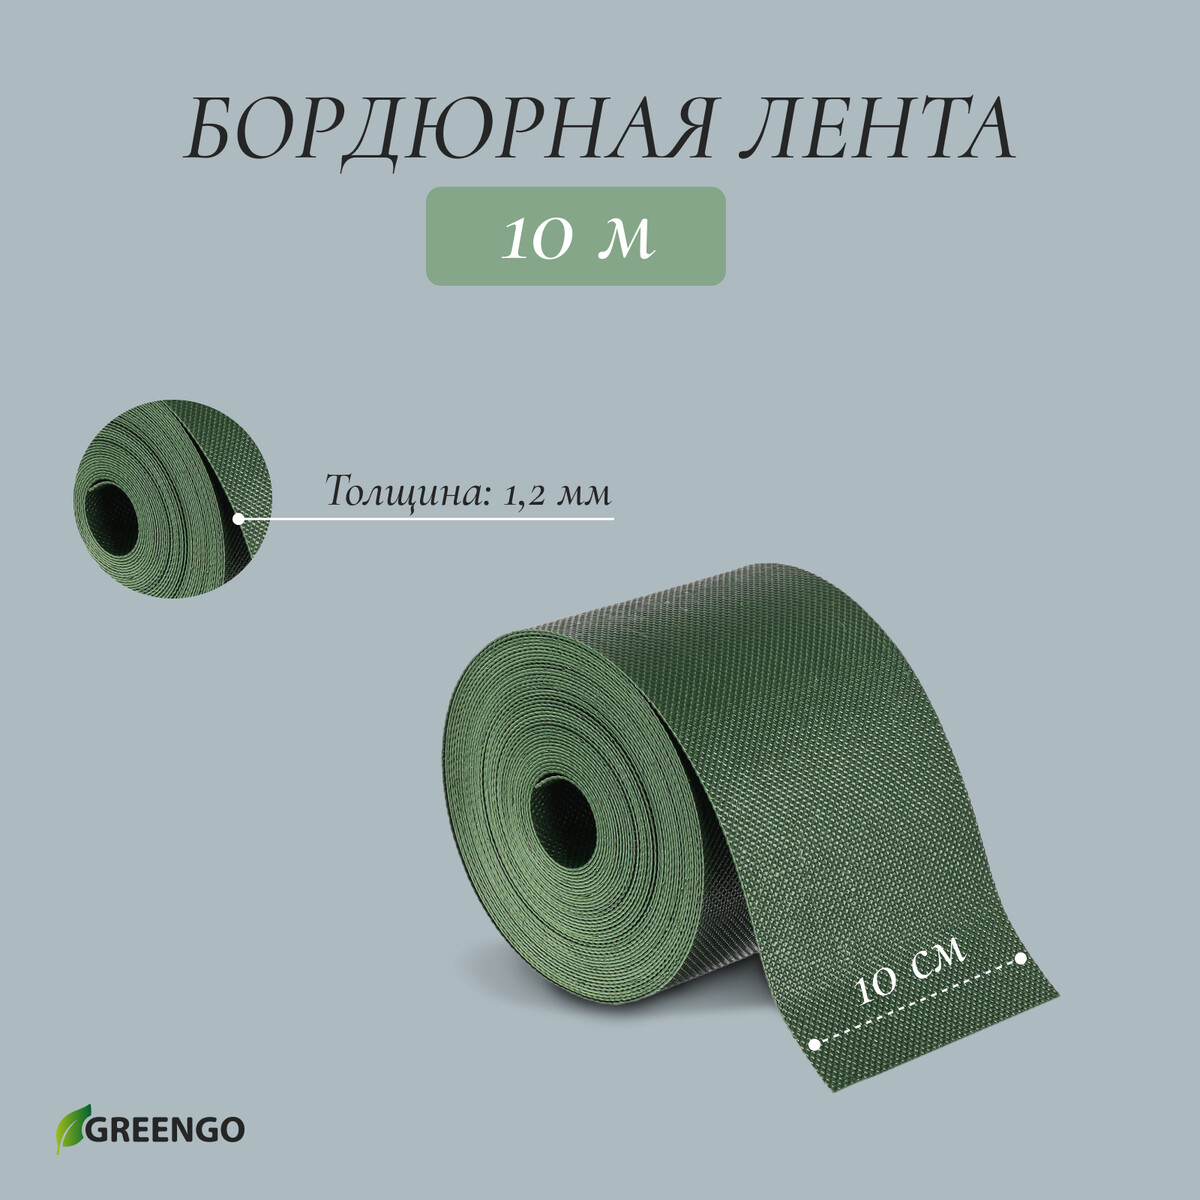 Лента бордюрная, 0.1 × 10 м, толщина 1.2 мм, пластиковая, зеленая, greengo лента бордюрная 0 2 × 9 м толщина 1 2 мм пластиковая фигурная коричневая greengo